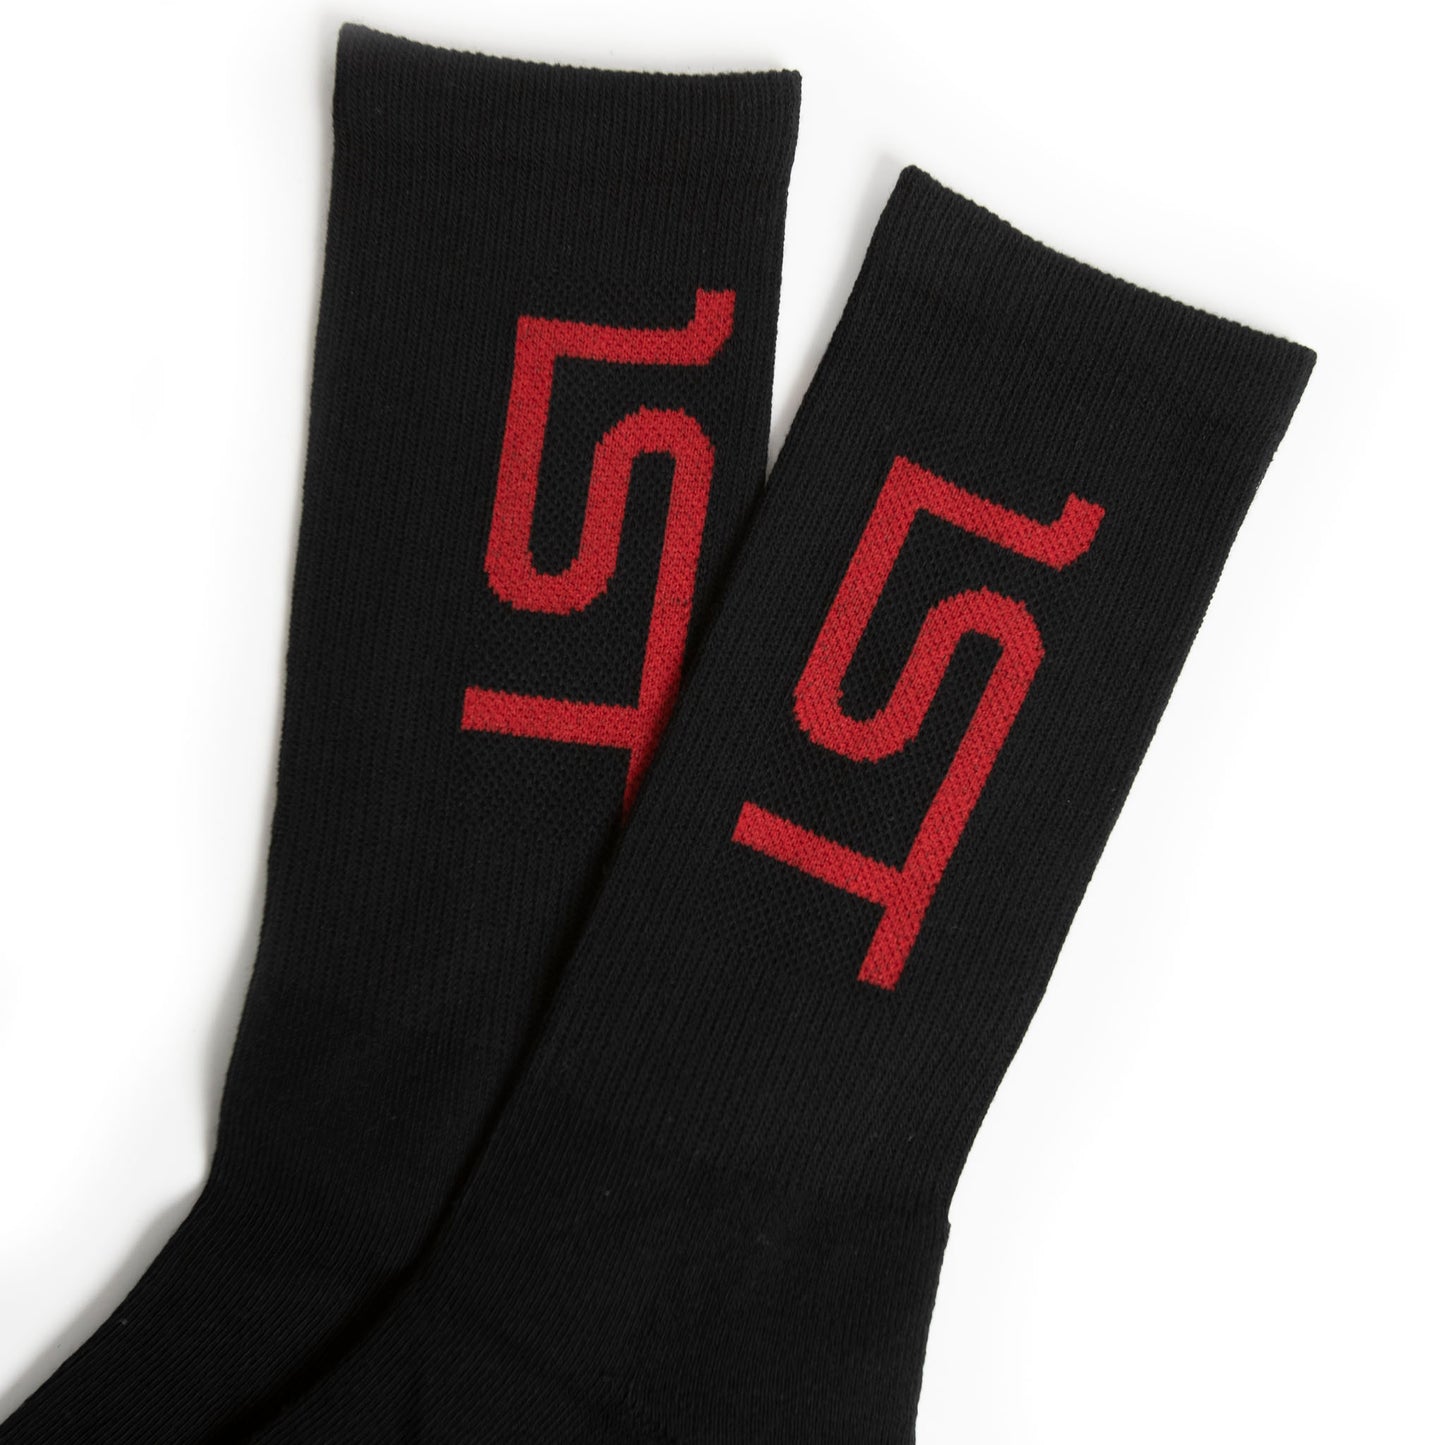 1ST Socks